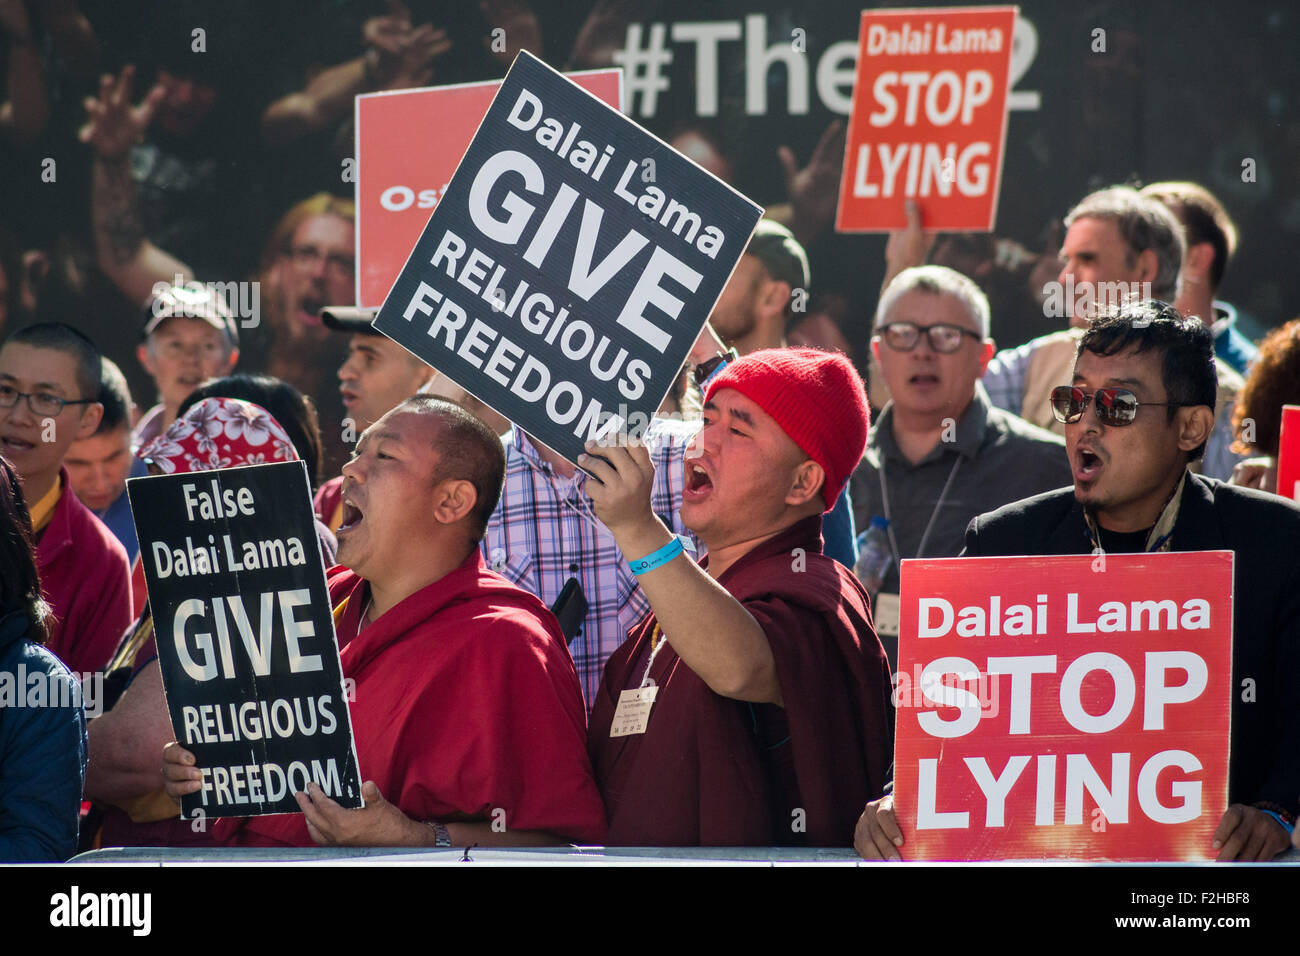 London, UK. 19. September 2015. Mitglieder der Shugden Gemeinschaft protest außerhalb der O2-Arena beschuldigen den Dalai Lama versteckt die Menschenrechtsverletzungen und die unethisch Verfolgung der Shugden Buddhisten Credit: Guy Corbishley/Alamy Live News Stockfoto